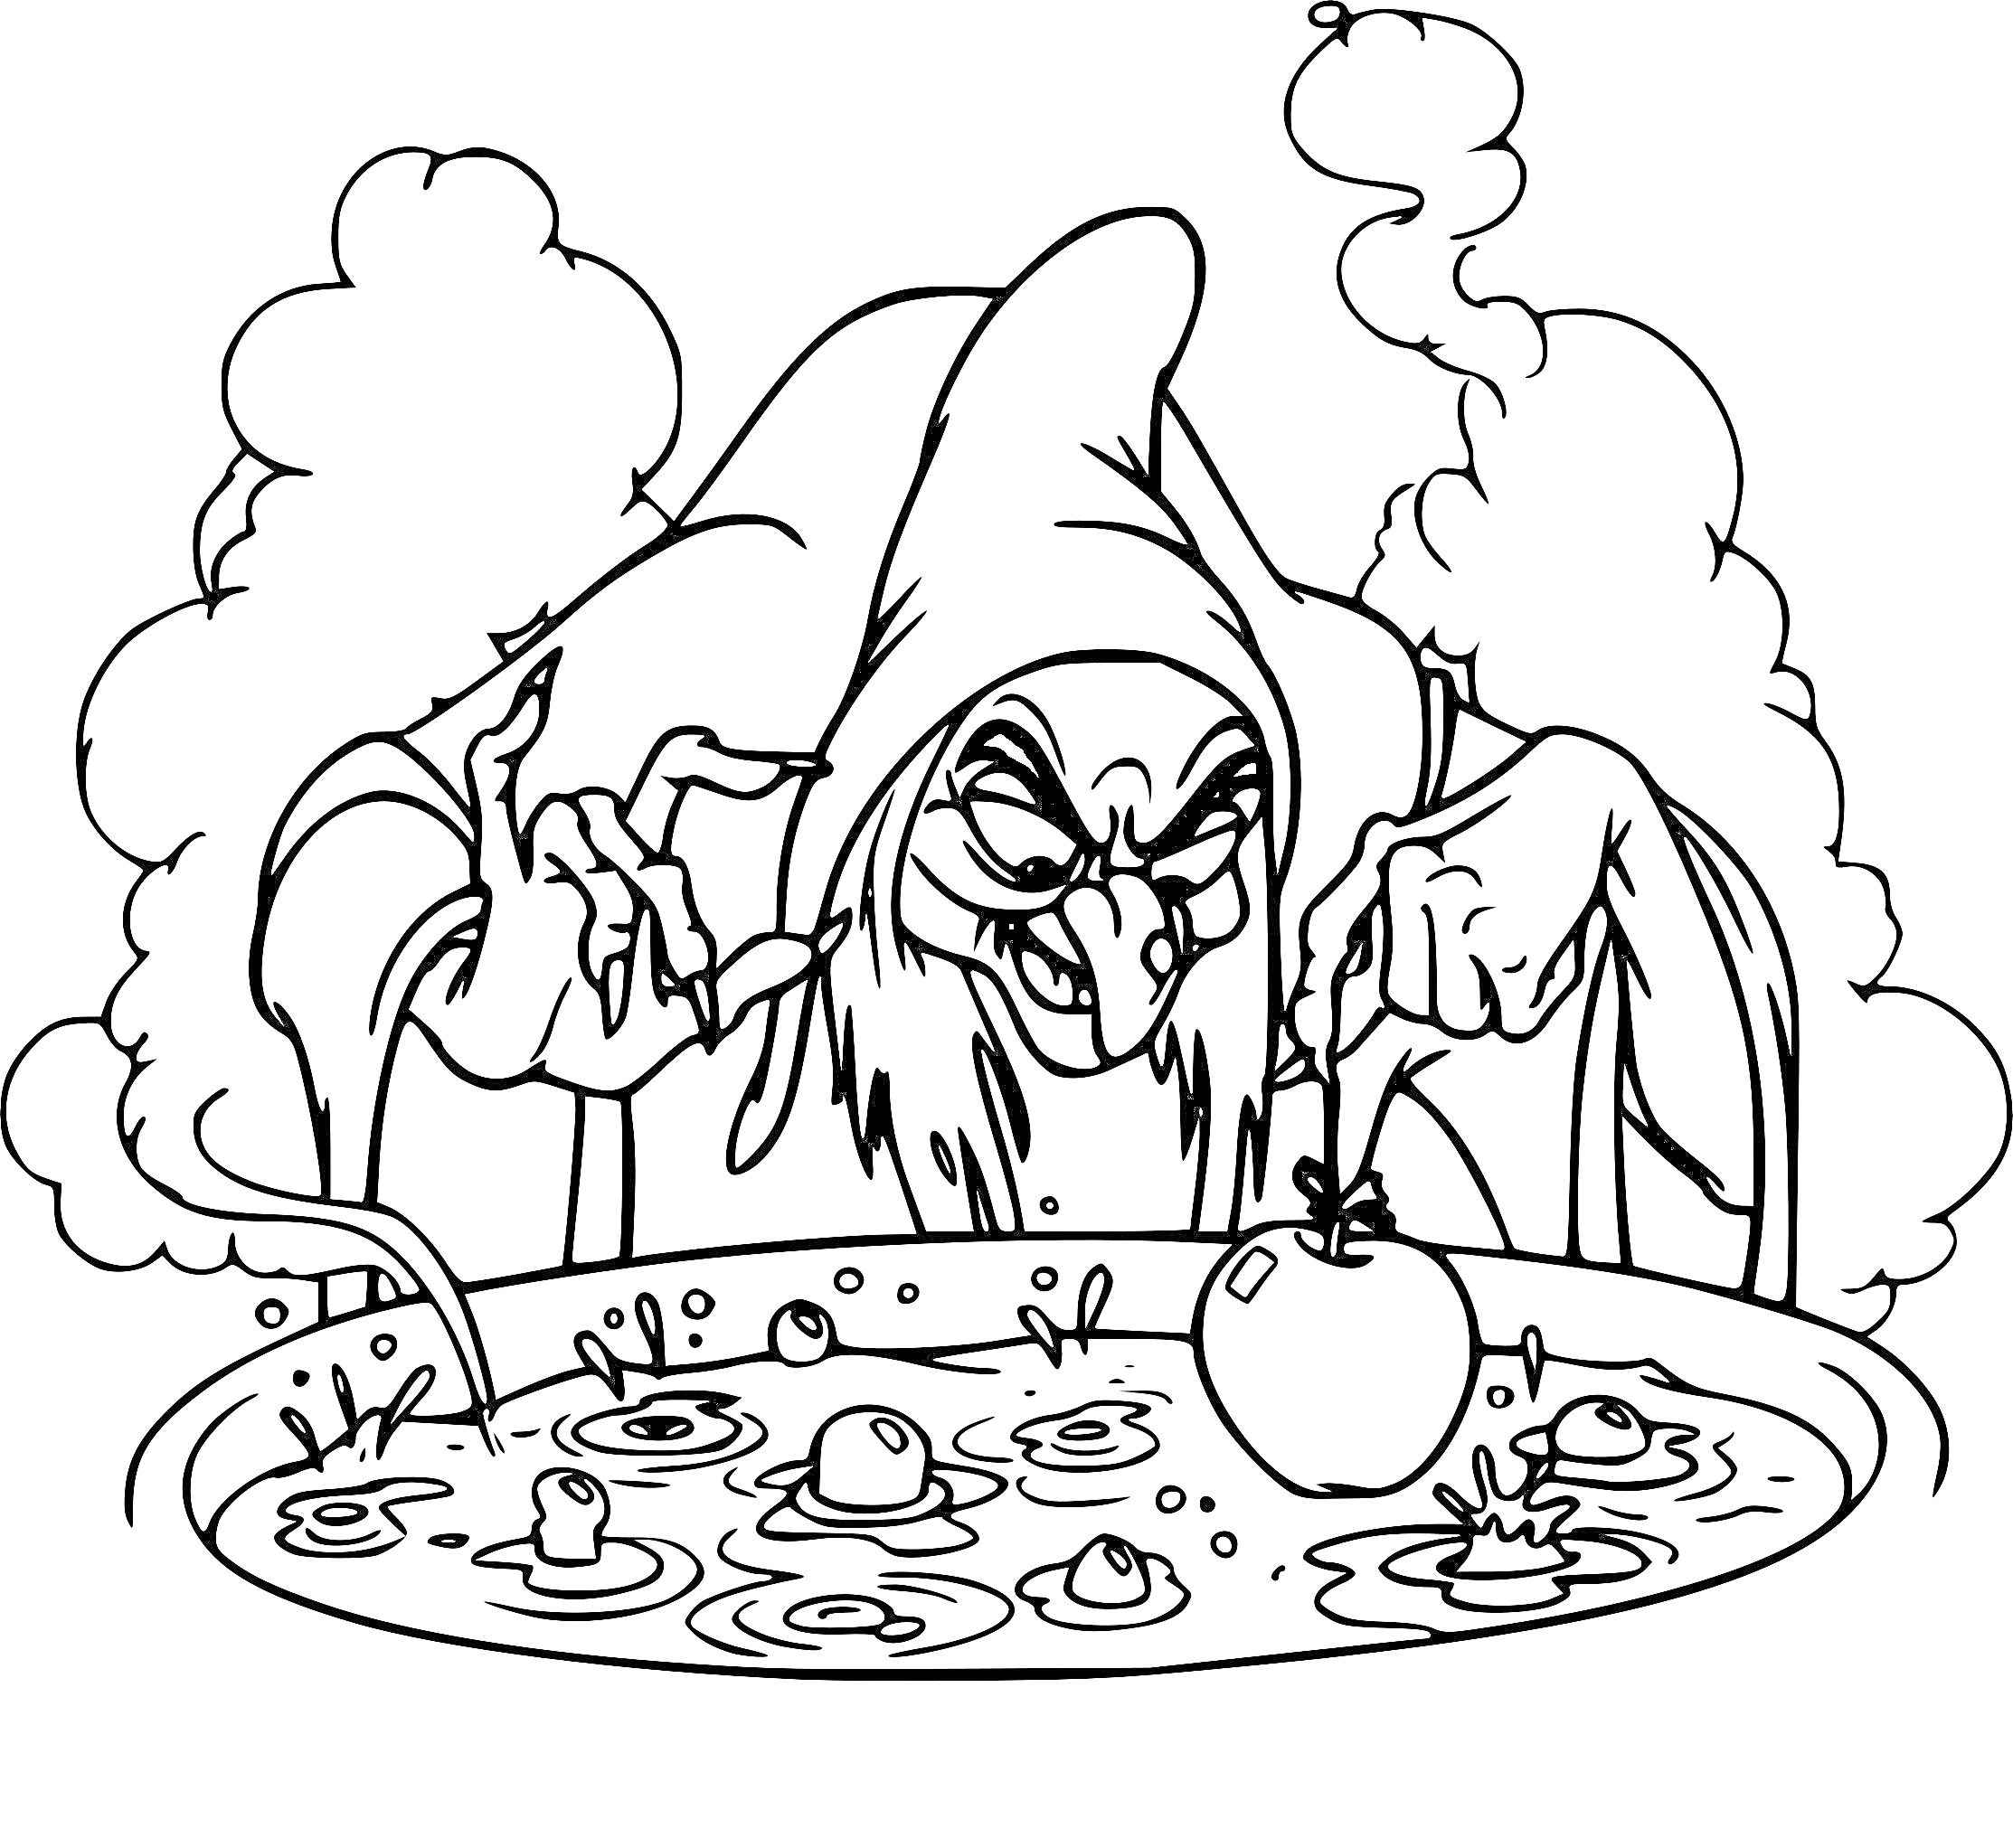 Раскраска Ведьма с капюшоном варит зелье с яблоком в котле